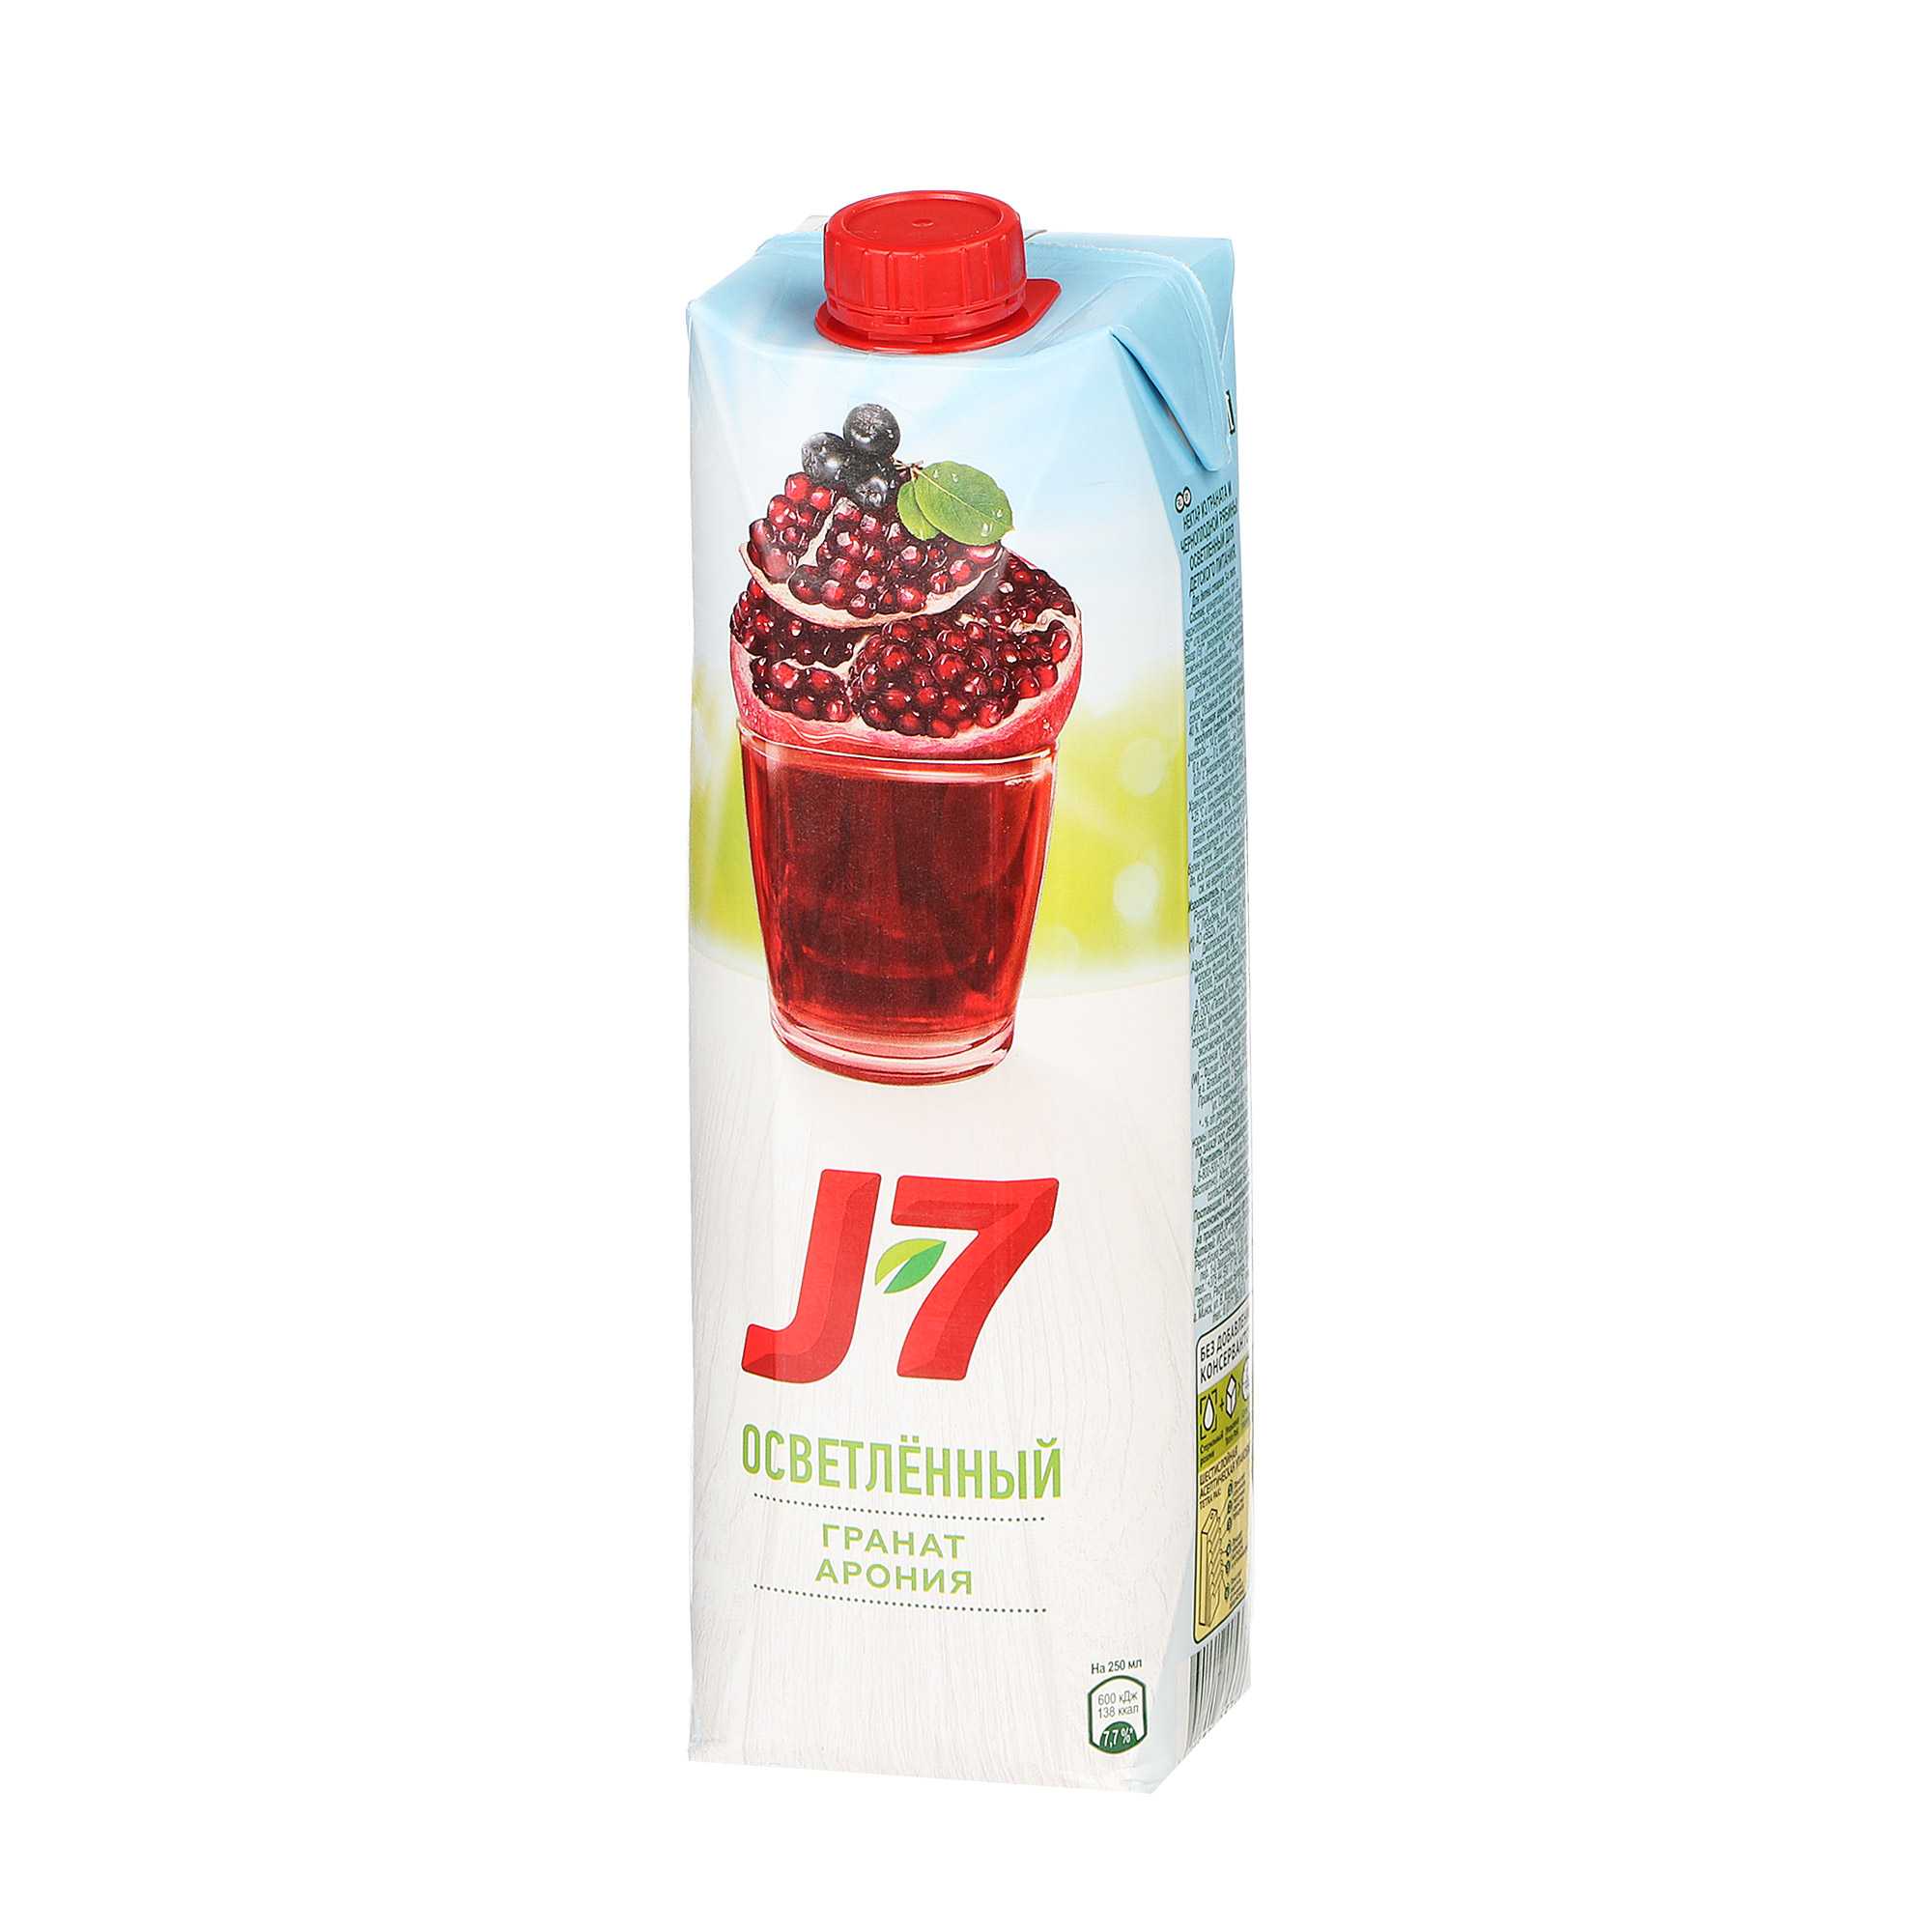 Нектар J7 гранатовый розовый 0,97 л нектар j7 энергия фруктов вишня осветлённый 0 97 л